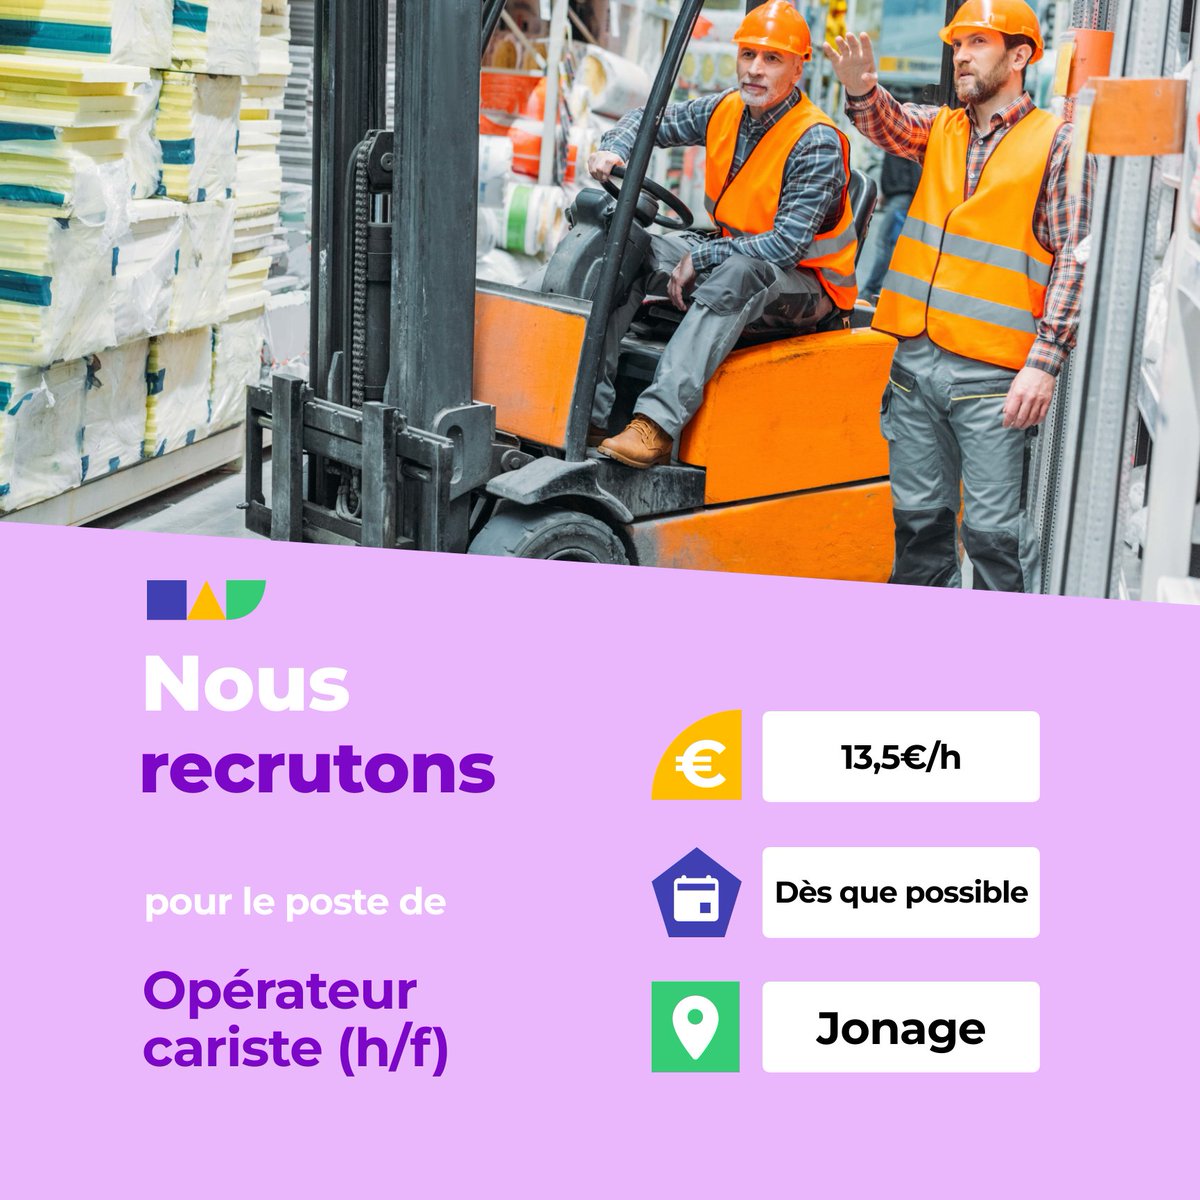 🛎️ Nouvelle offre d'emploi : Opérateur cariste (h/f) 🌎 Jonage (69330) 📅 Démarrage dans les 7 prochains jours 👉 Plus d'infos : jobs.iziwork.com/fr/offre-emplo… #recrutement #intérim #emploi #OffreEmploi #job #iziwork